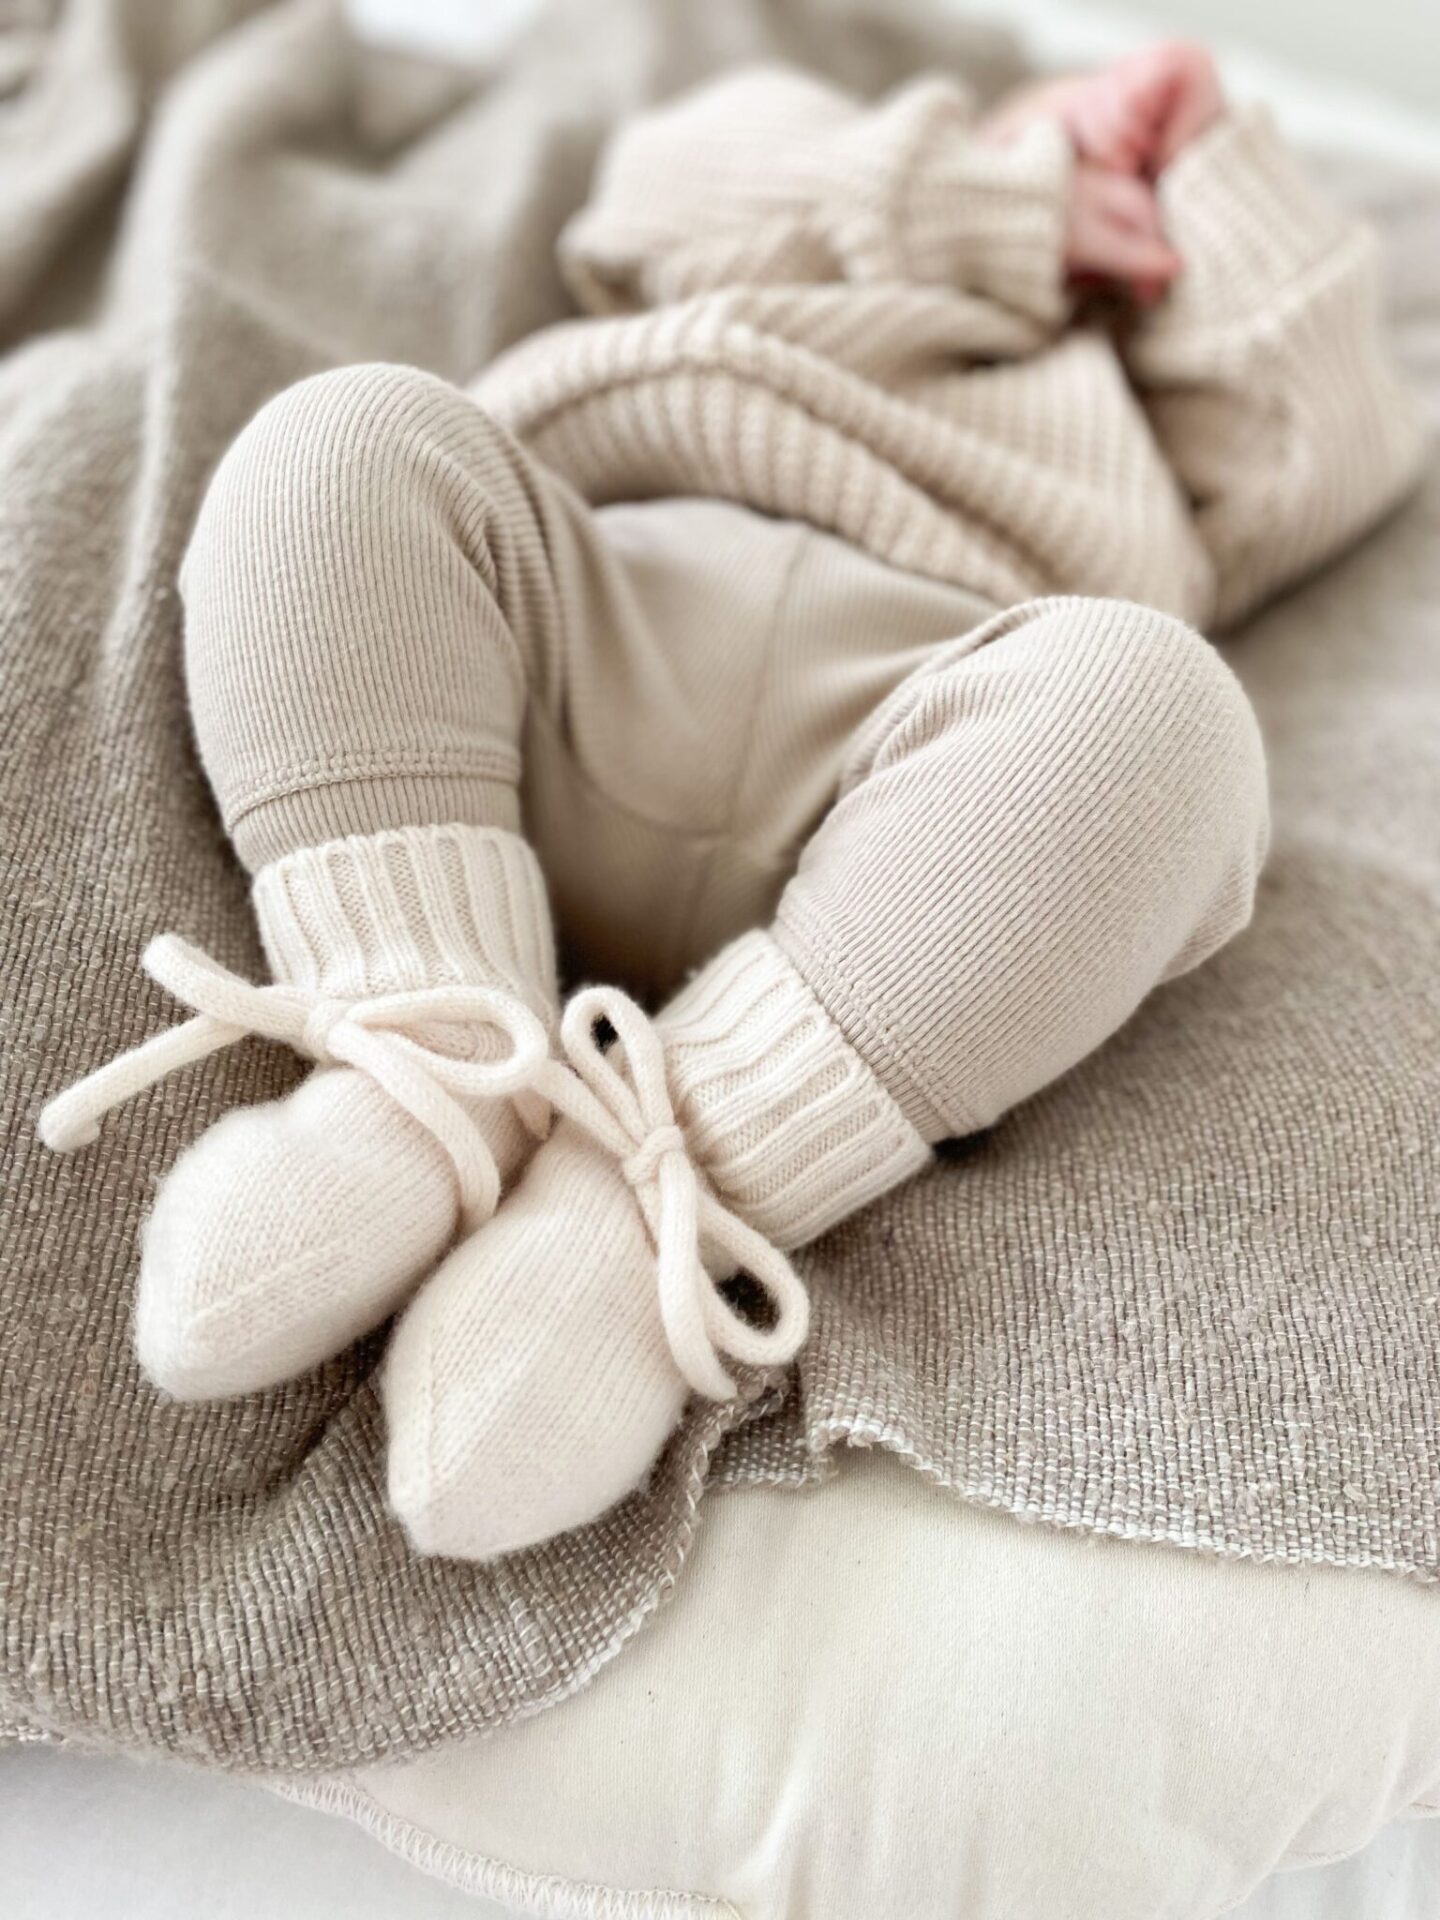 vetement bebe naissant et chaussure bébé